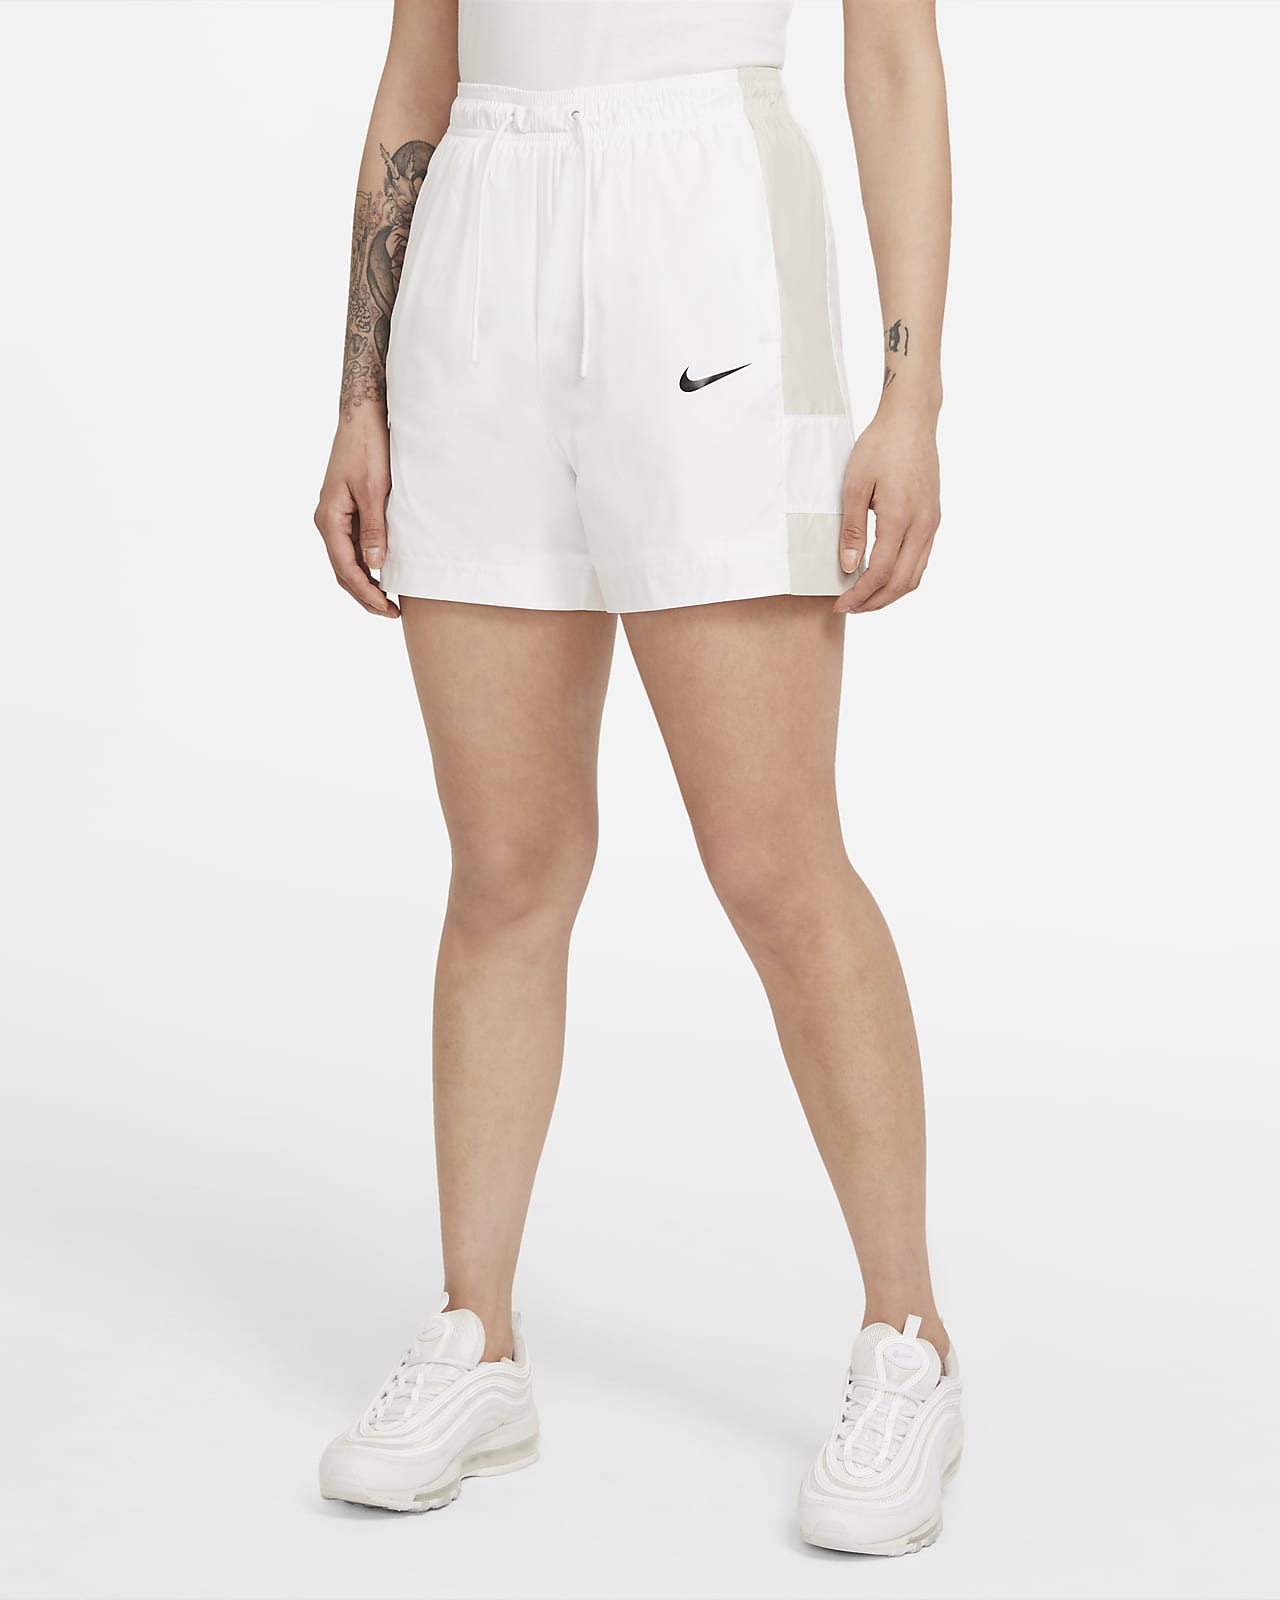 Lade være med brugervejledning Mesterskab Nike Sportswear Women's Shorts. Nike PH